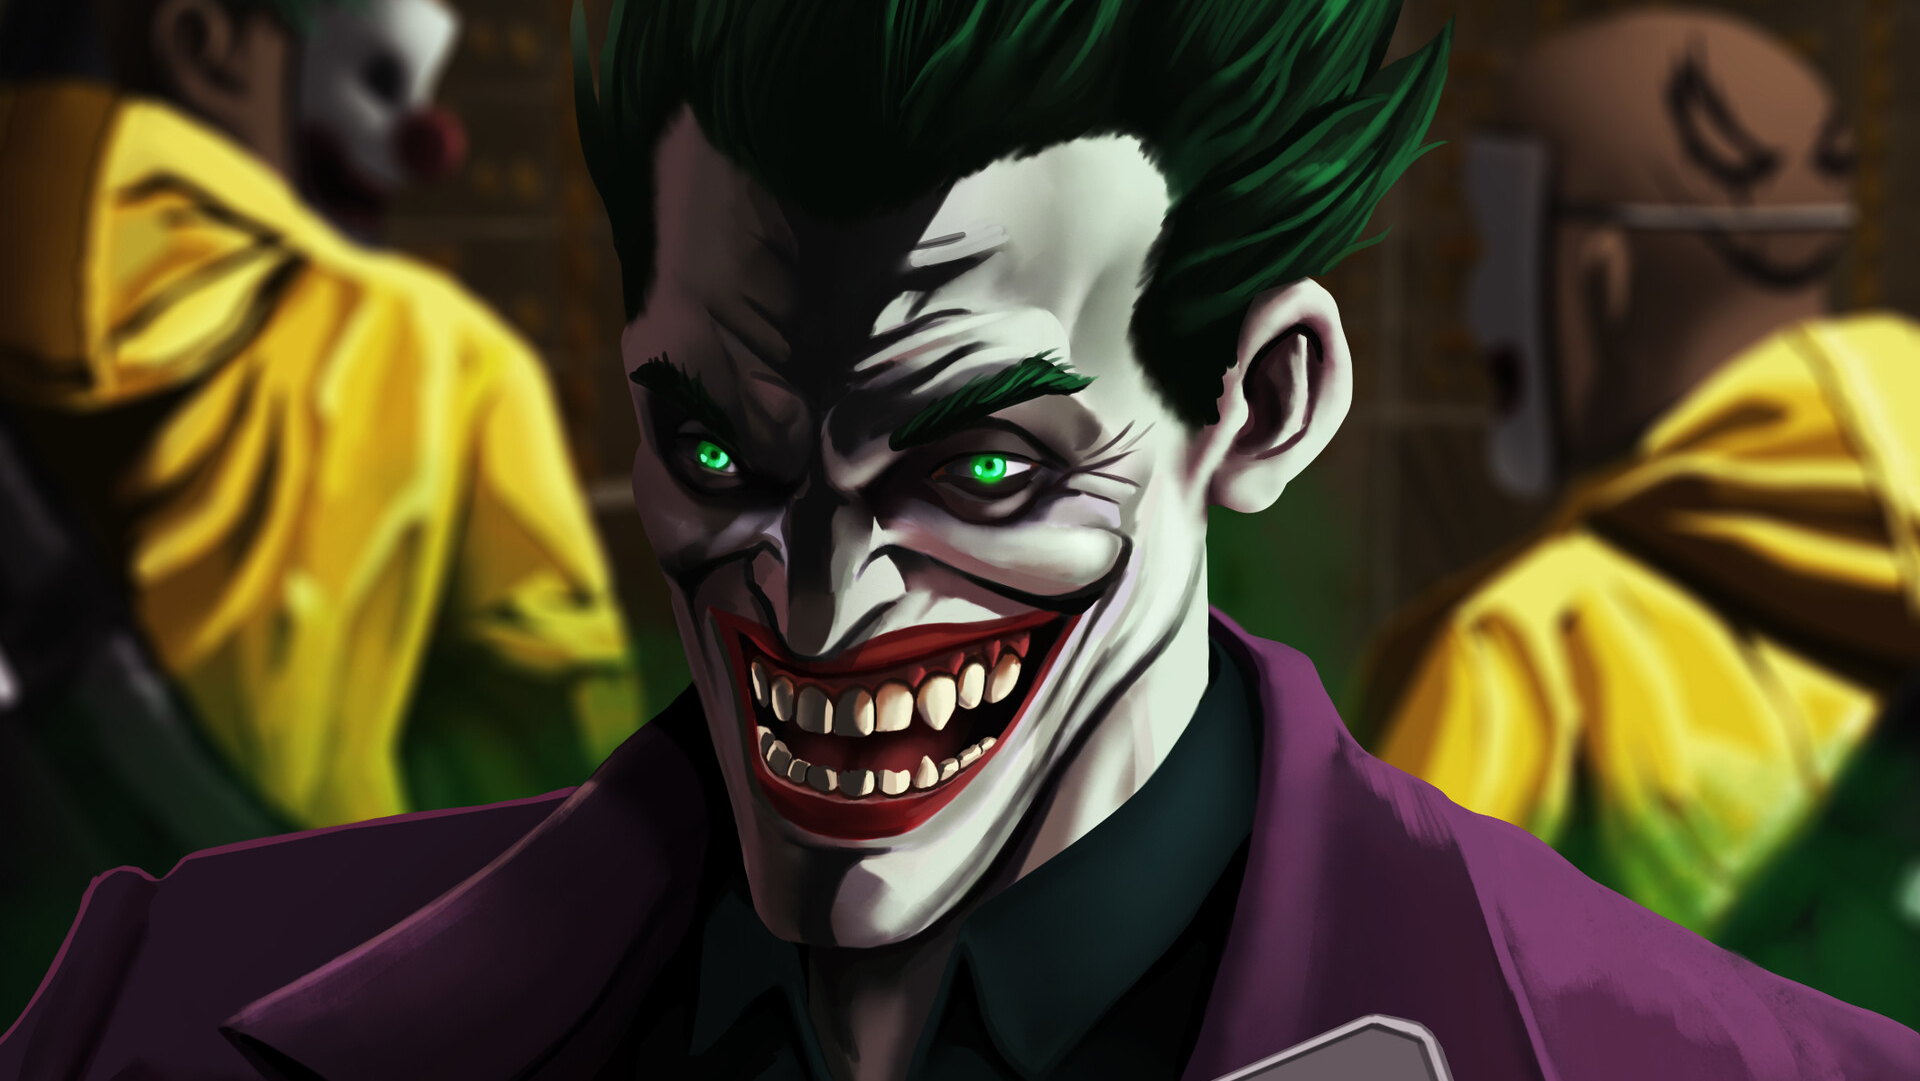 1920x1081 Resolution An Evil Joker Laugh 1920x1081 Resolution Wallpaper ...